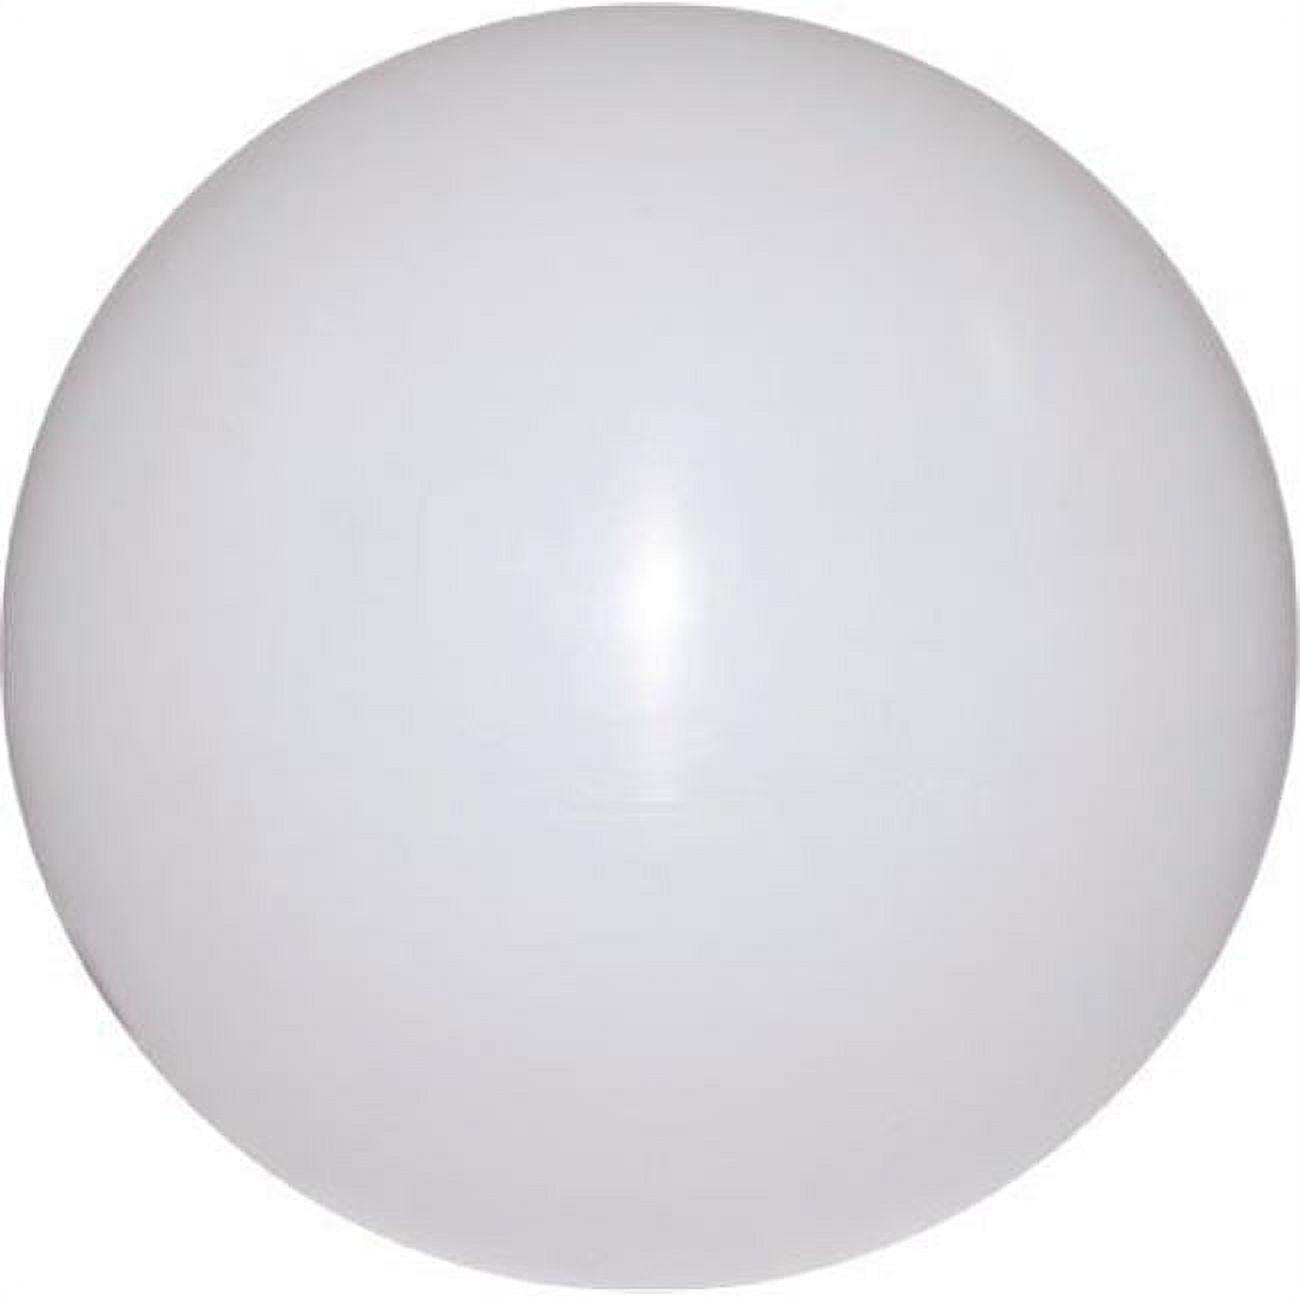 P-glb-63 16 X 5.25 In. Neckless Polyethylene White Globe